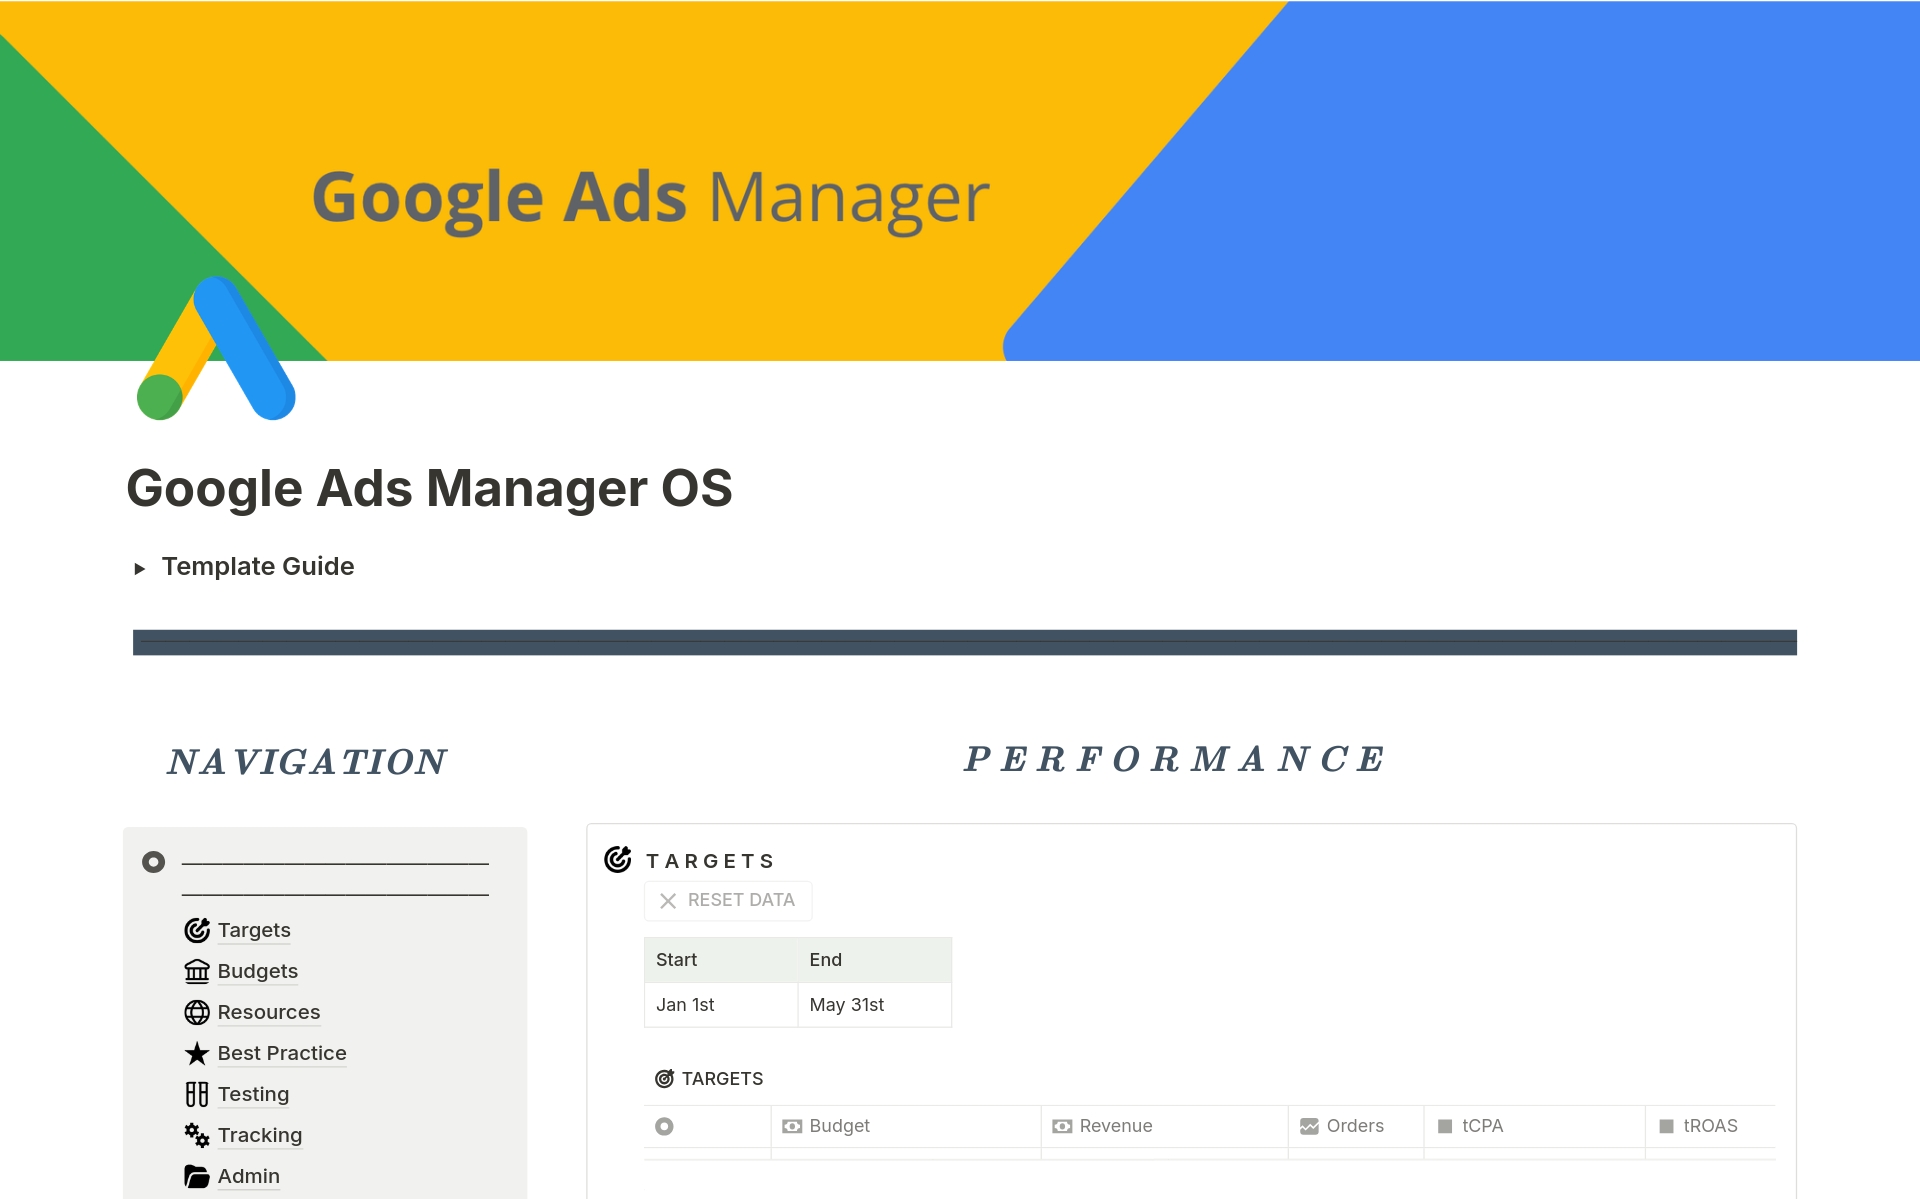 Vista previa de una plantilla para Google Ads Manager OS